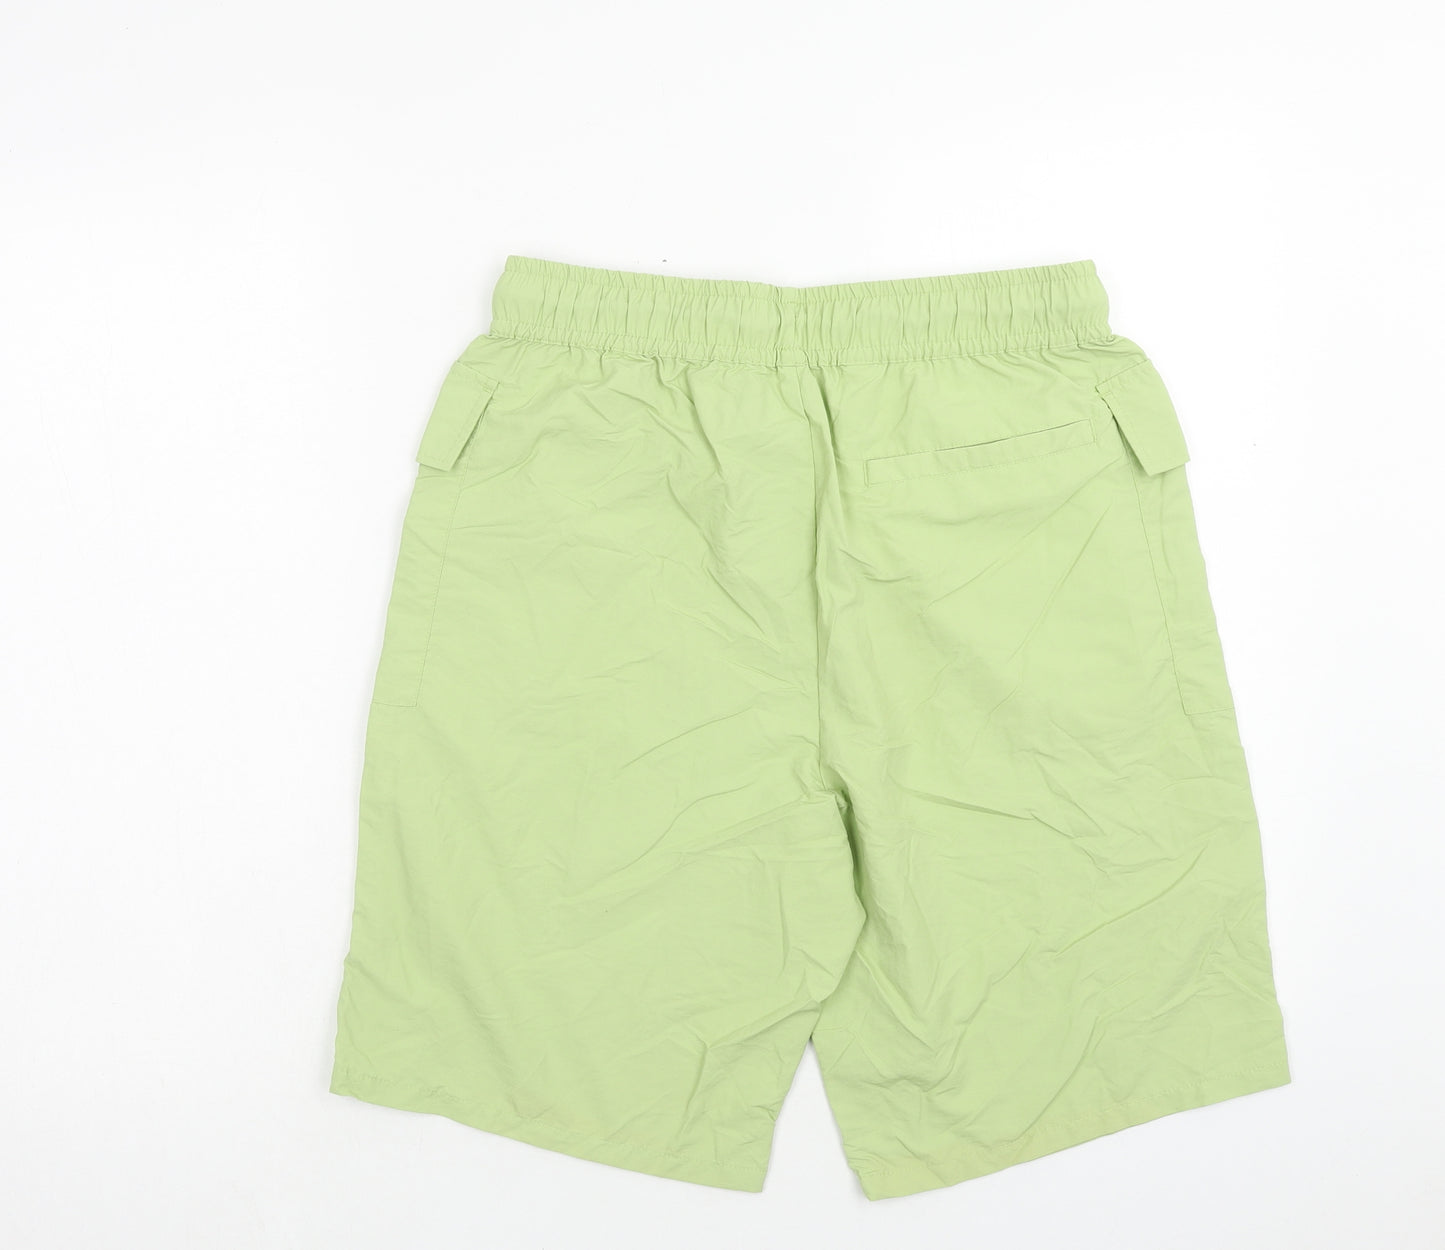 ASOS Mens Green Polyamide Sweat Shorts Size 32 in Regular Drawstring